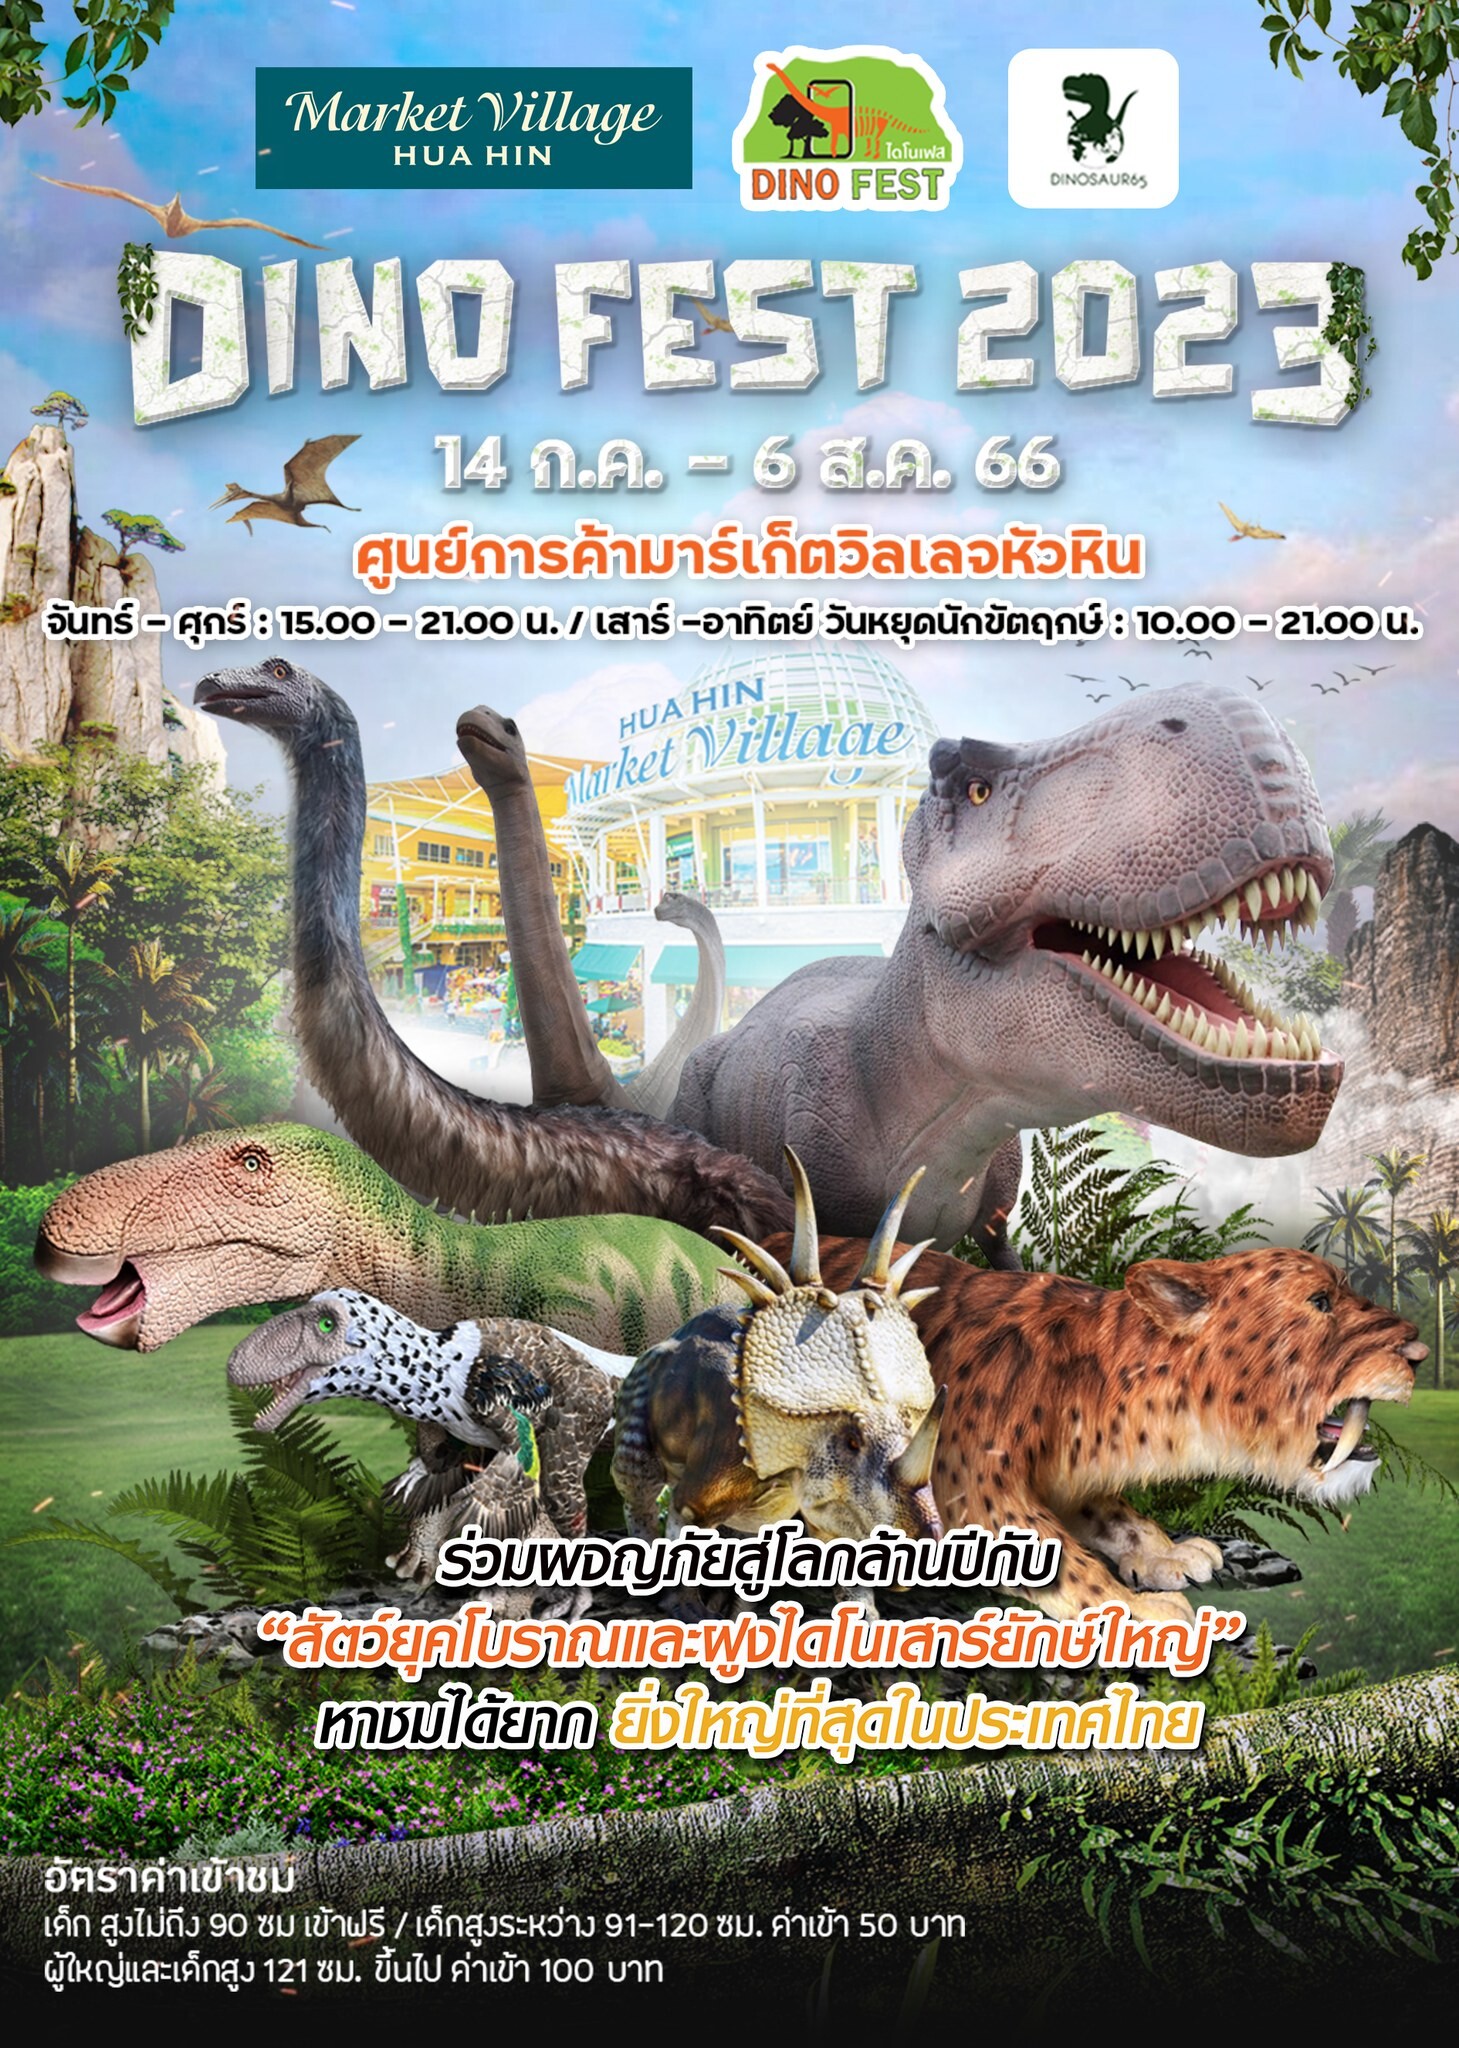 Dino Fest 2023 ยิ่งใหญ่กว่าเดิม เพิ่มเติมด้วยฝูงไดโนเสาร์